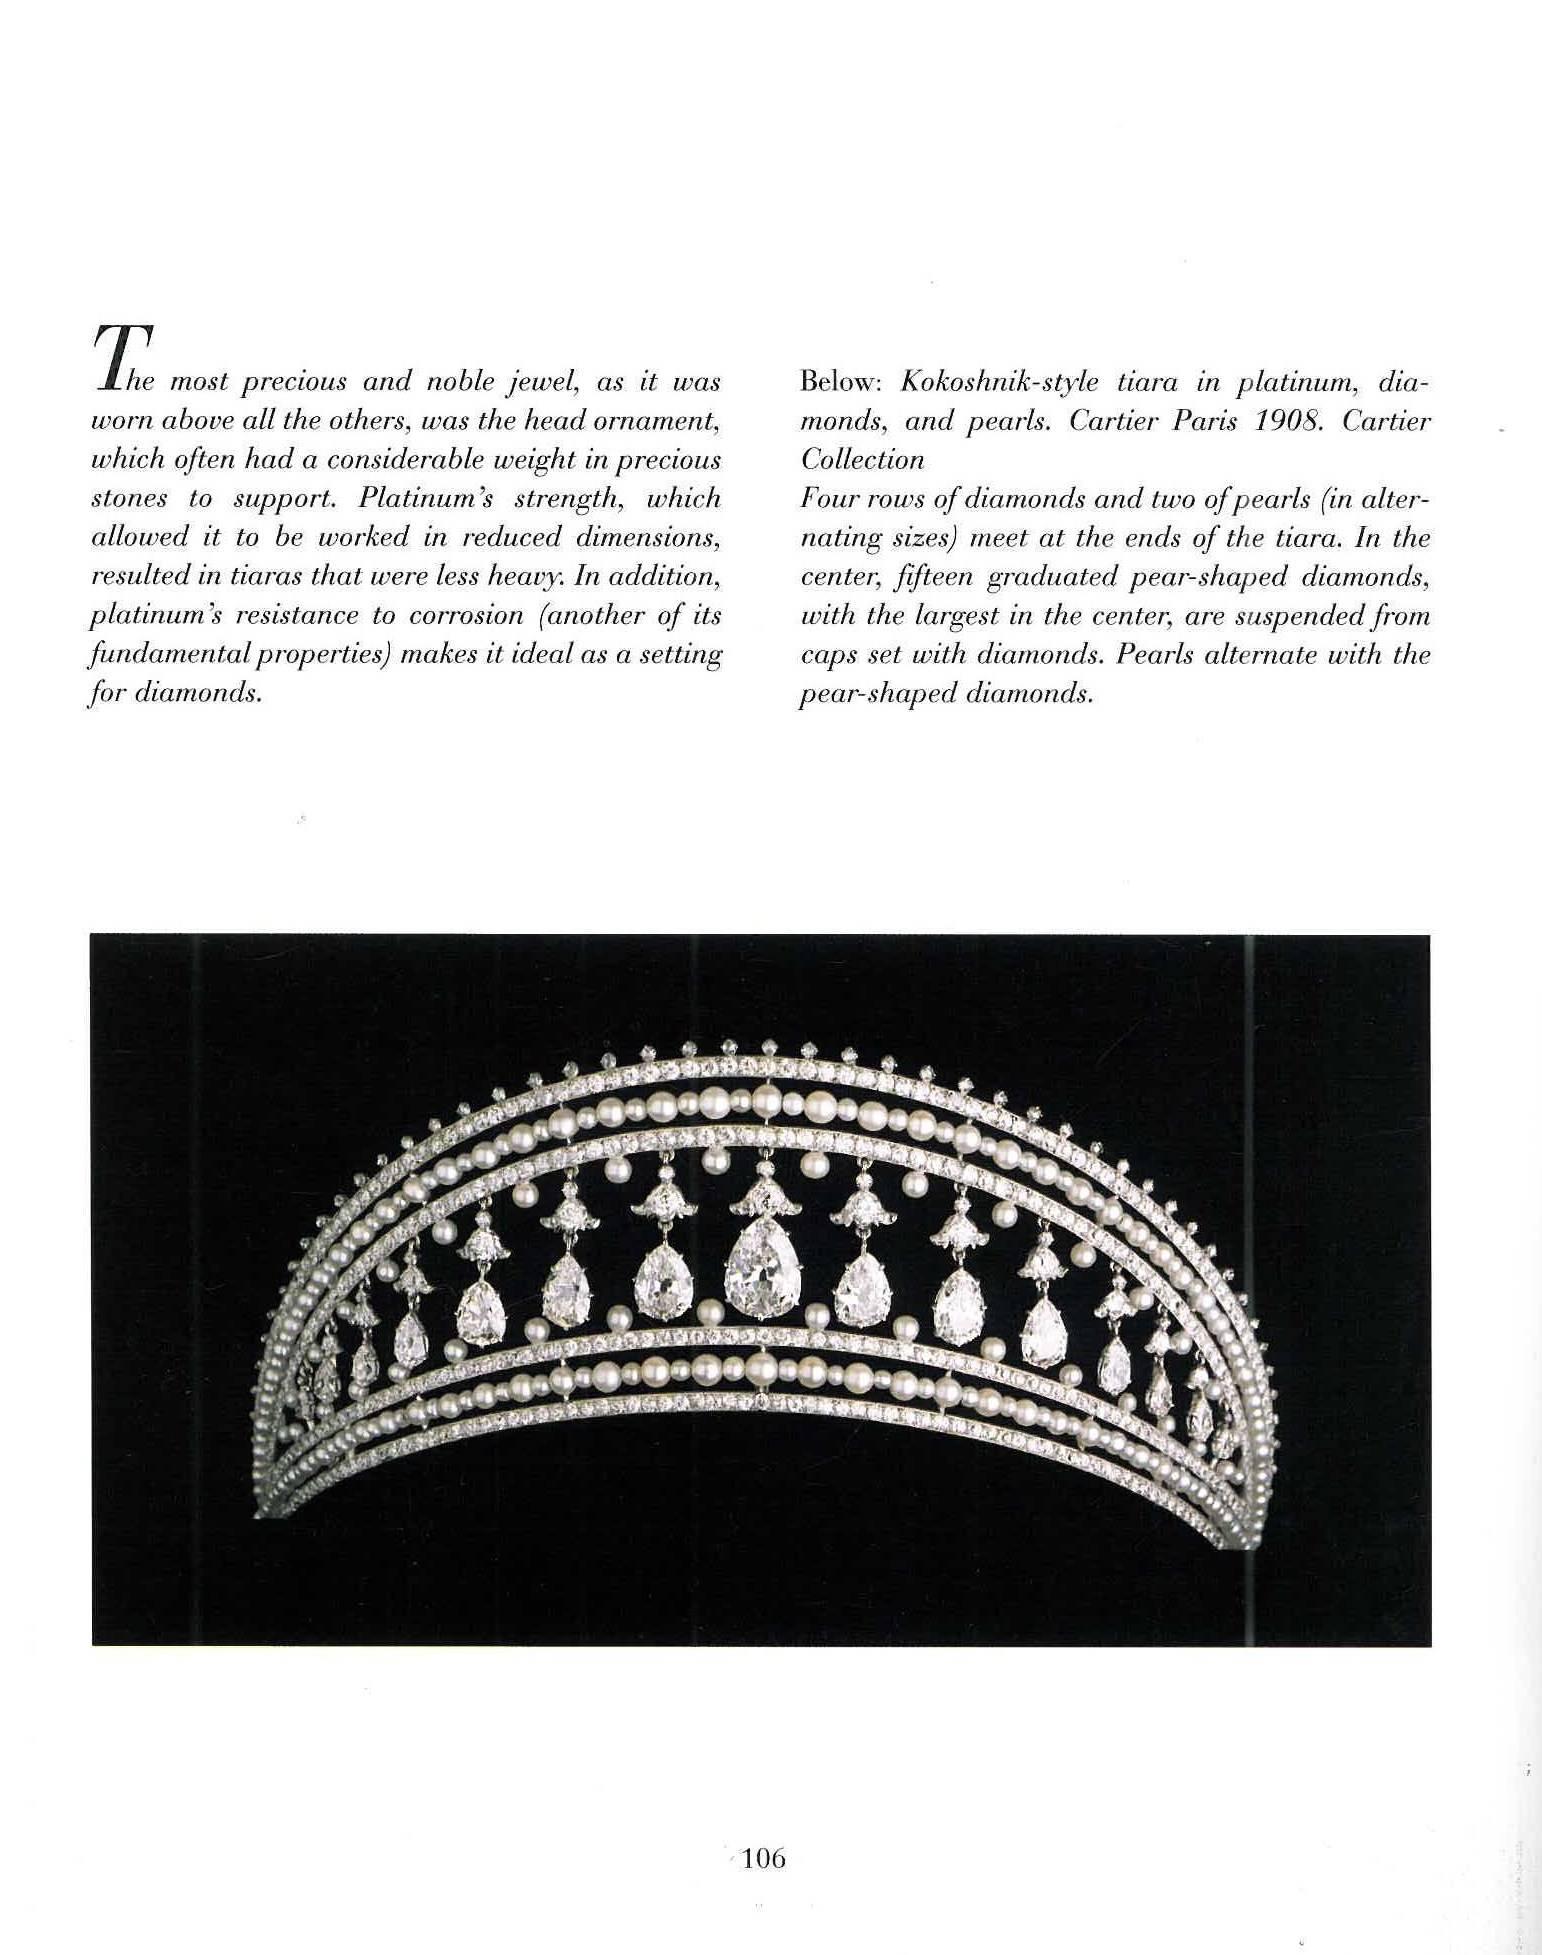 Dieses wunderschön fotografierte und illustrierte Buch ist die erste Übersicht über Cartiers Arbeiten in Platin. Platin ist bekannt für seinen unvergleichlichen Reiz und die Art und Weise, wie es Diamanten zur Geltung bringt. Das Buch präsentiert